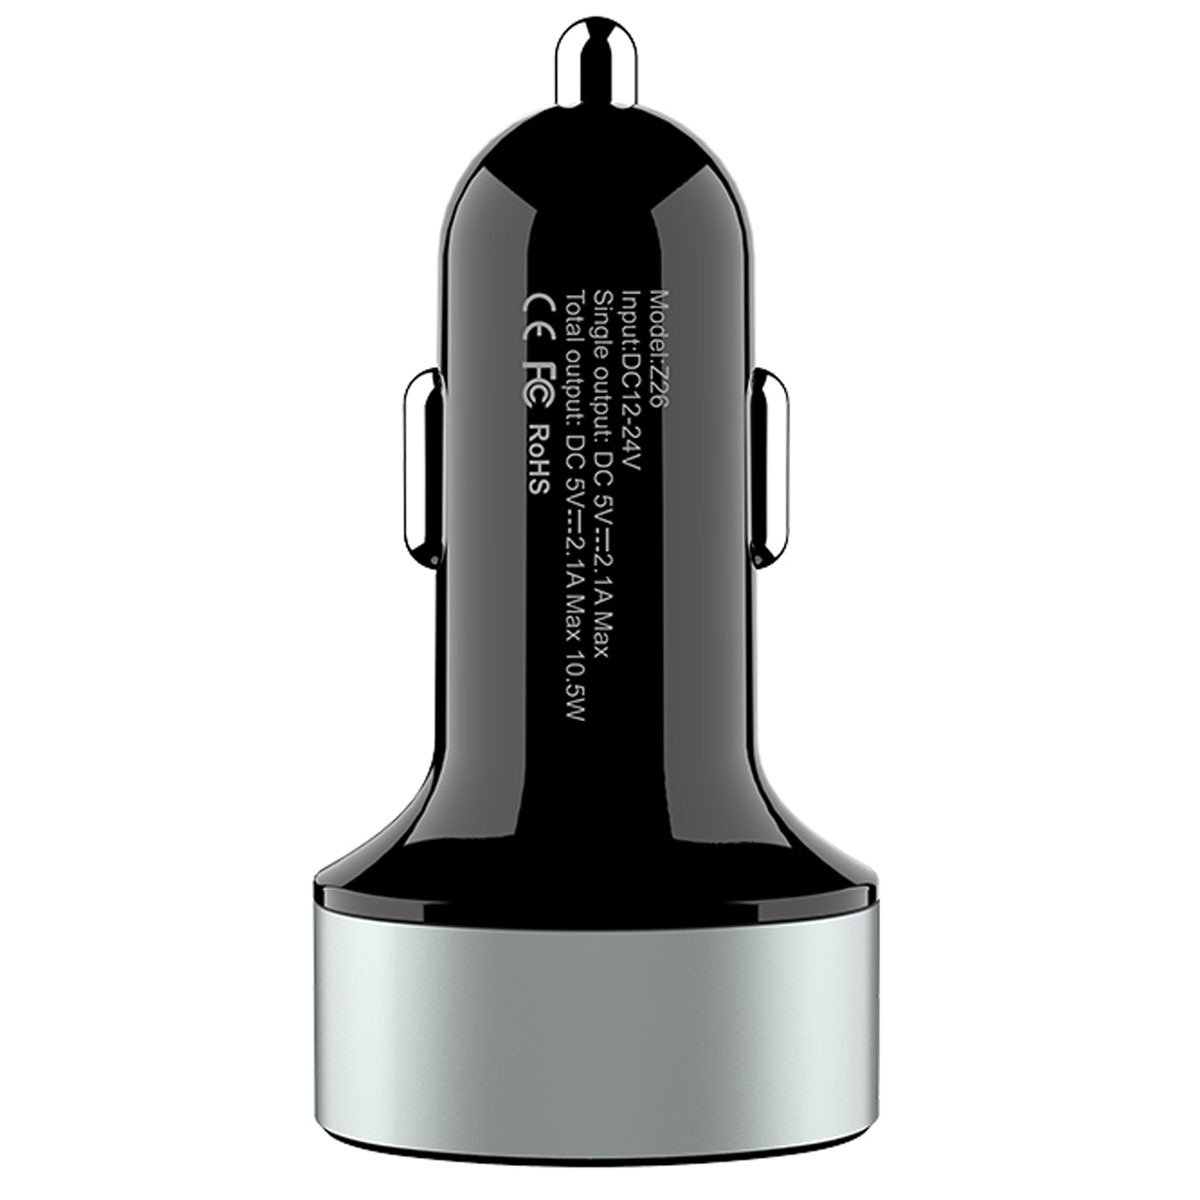 АЗУ (Автомобильное зарядное устройство) HOCO Z26 High Praise, 10.5W, 2.1A, 2 USB, цвет черный